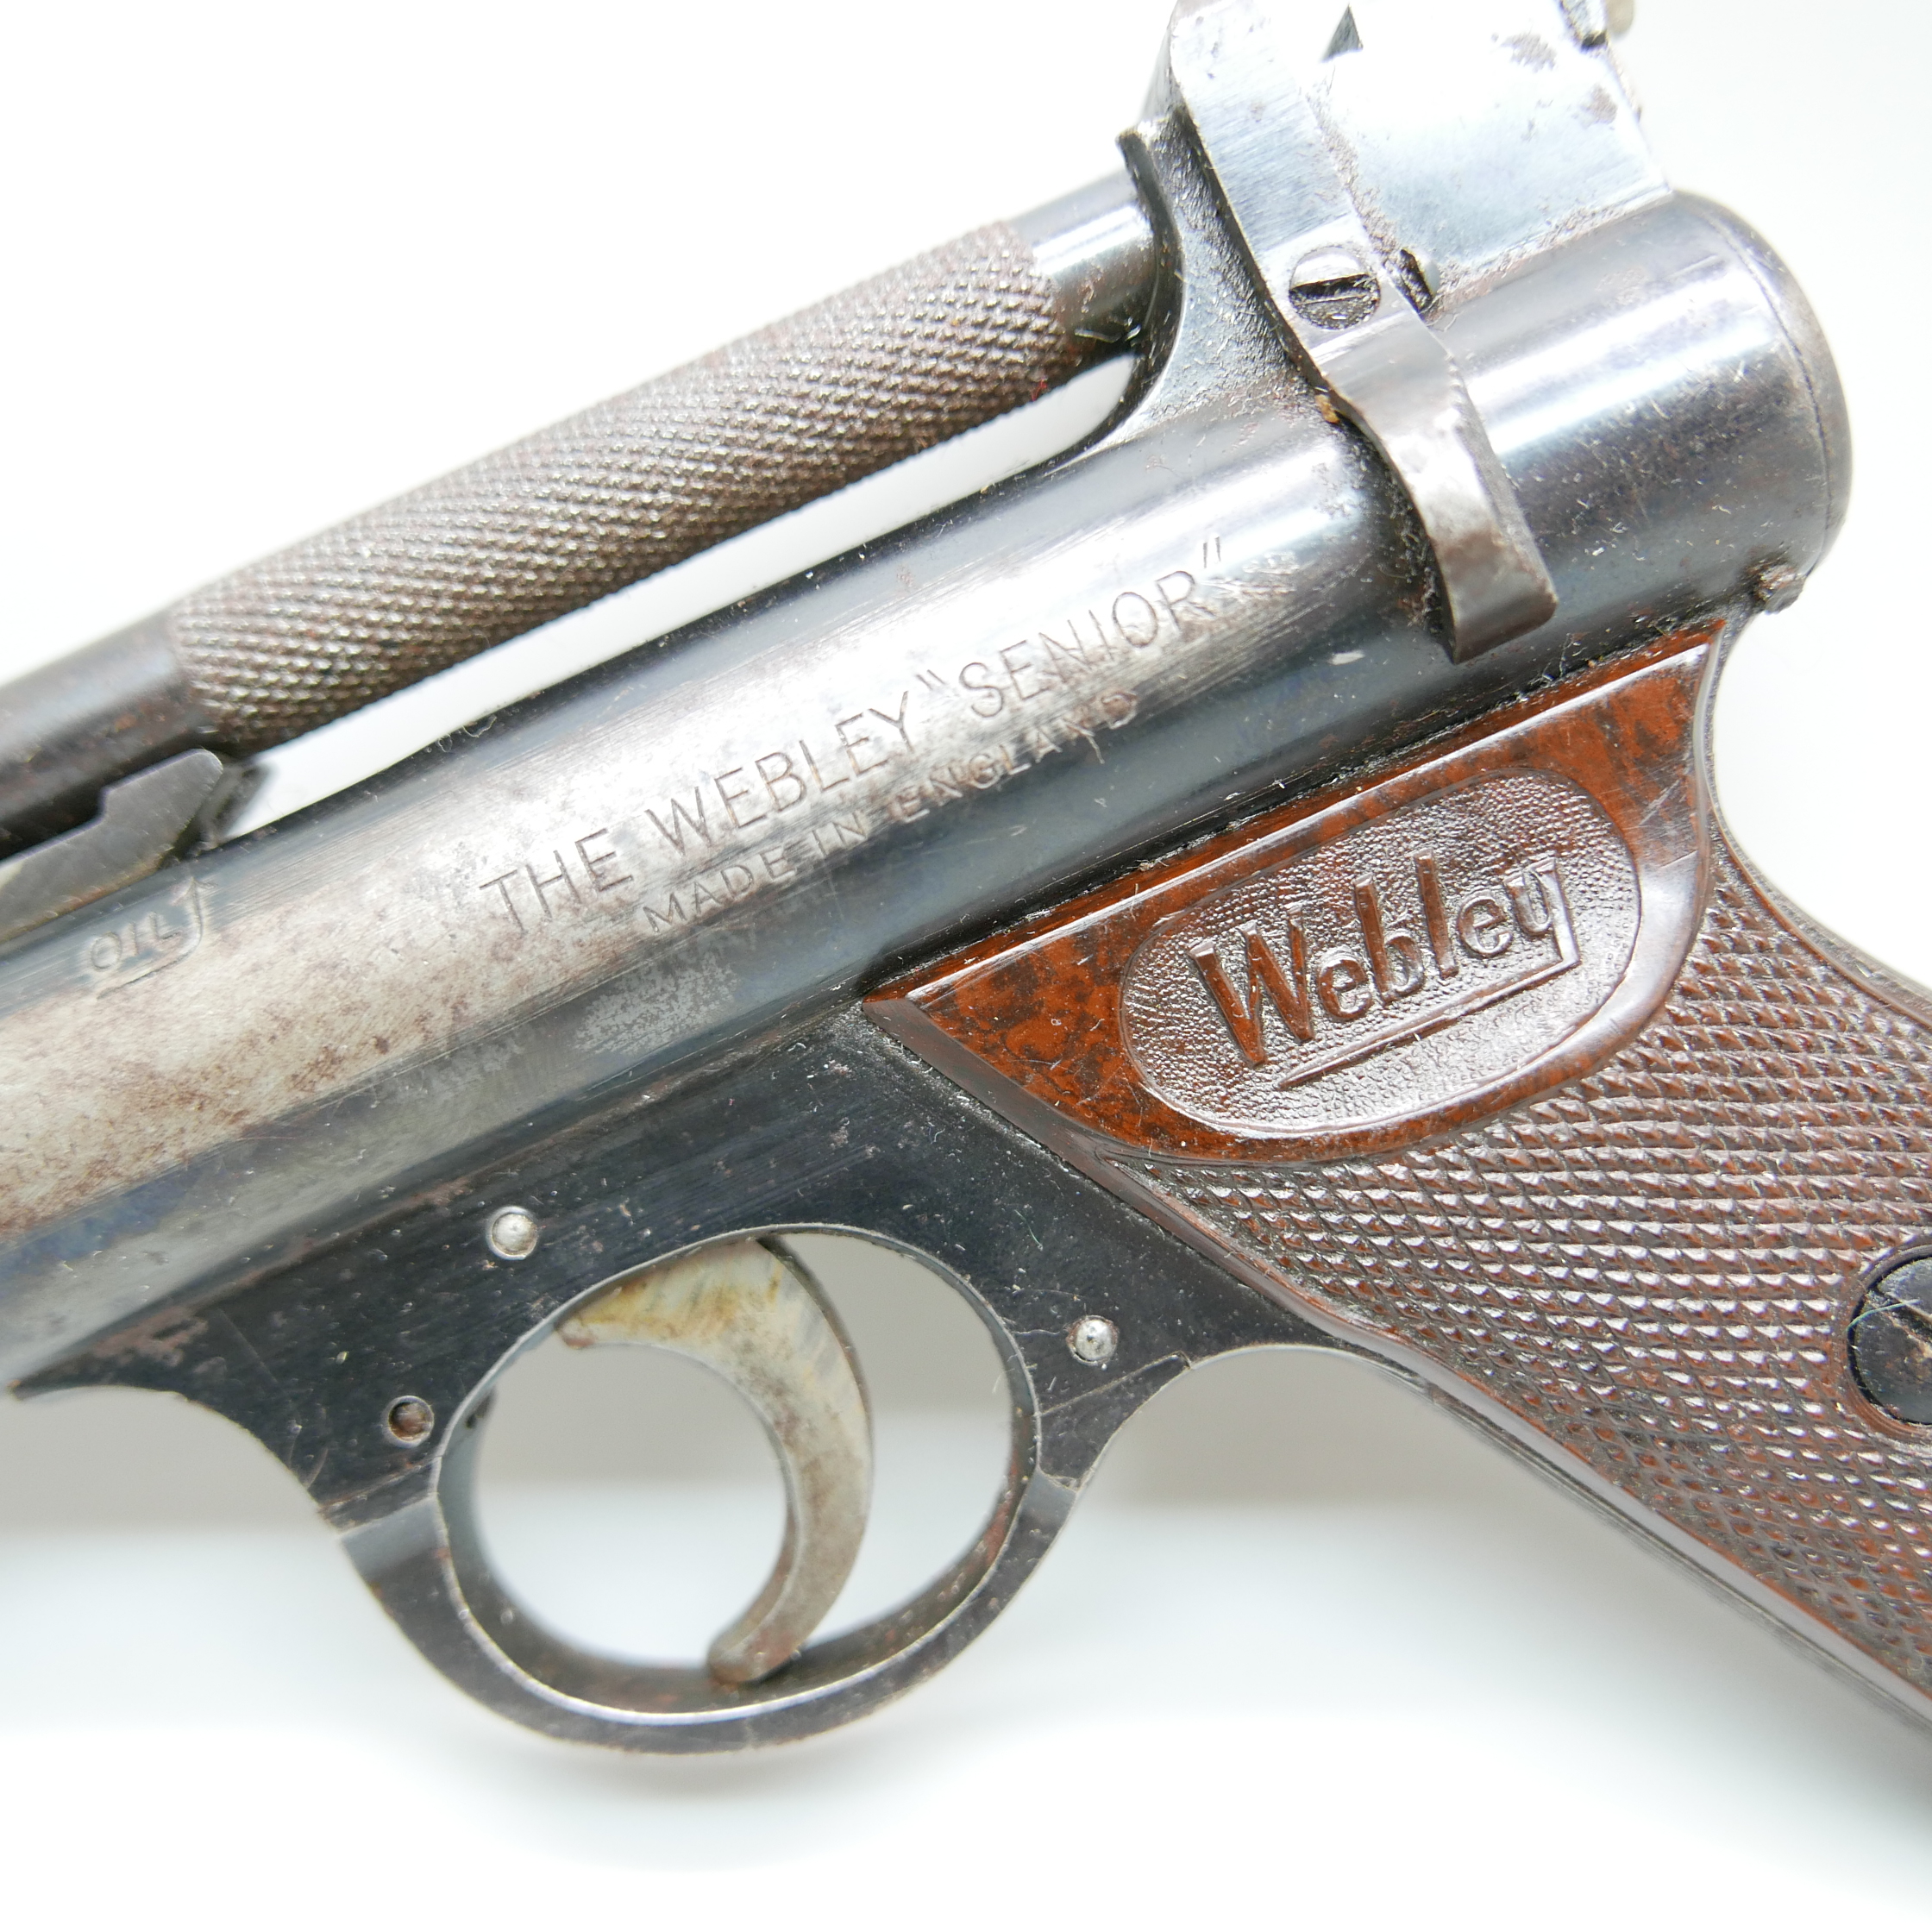 A 'The Webley' Senior pellet gun, made in England - Image 2 of 3